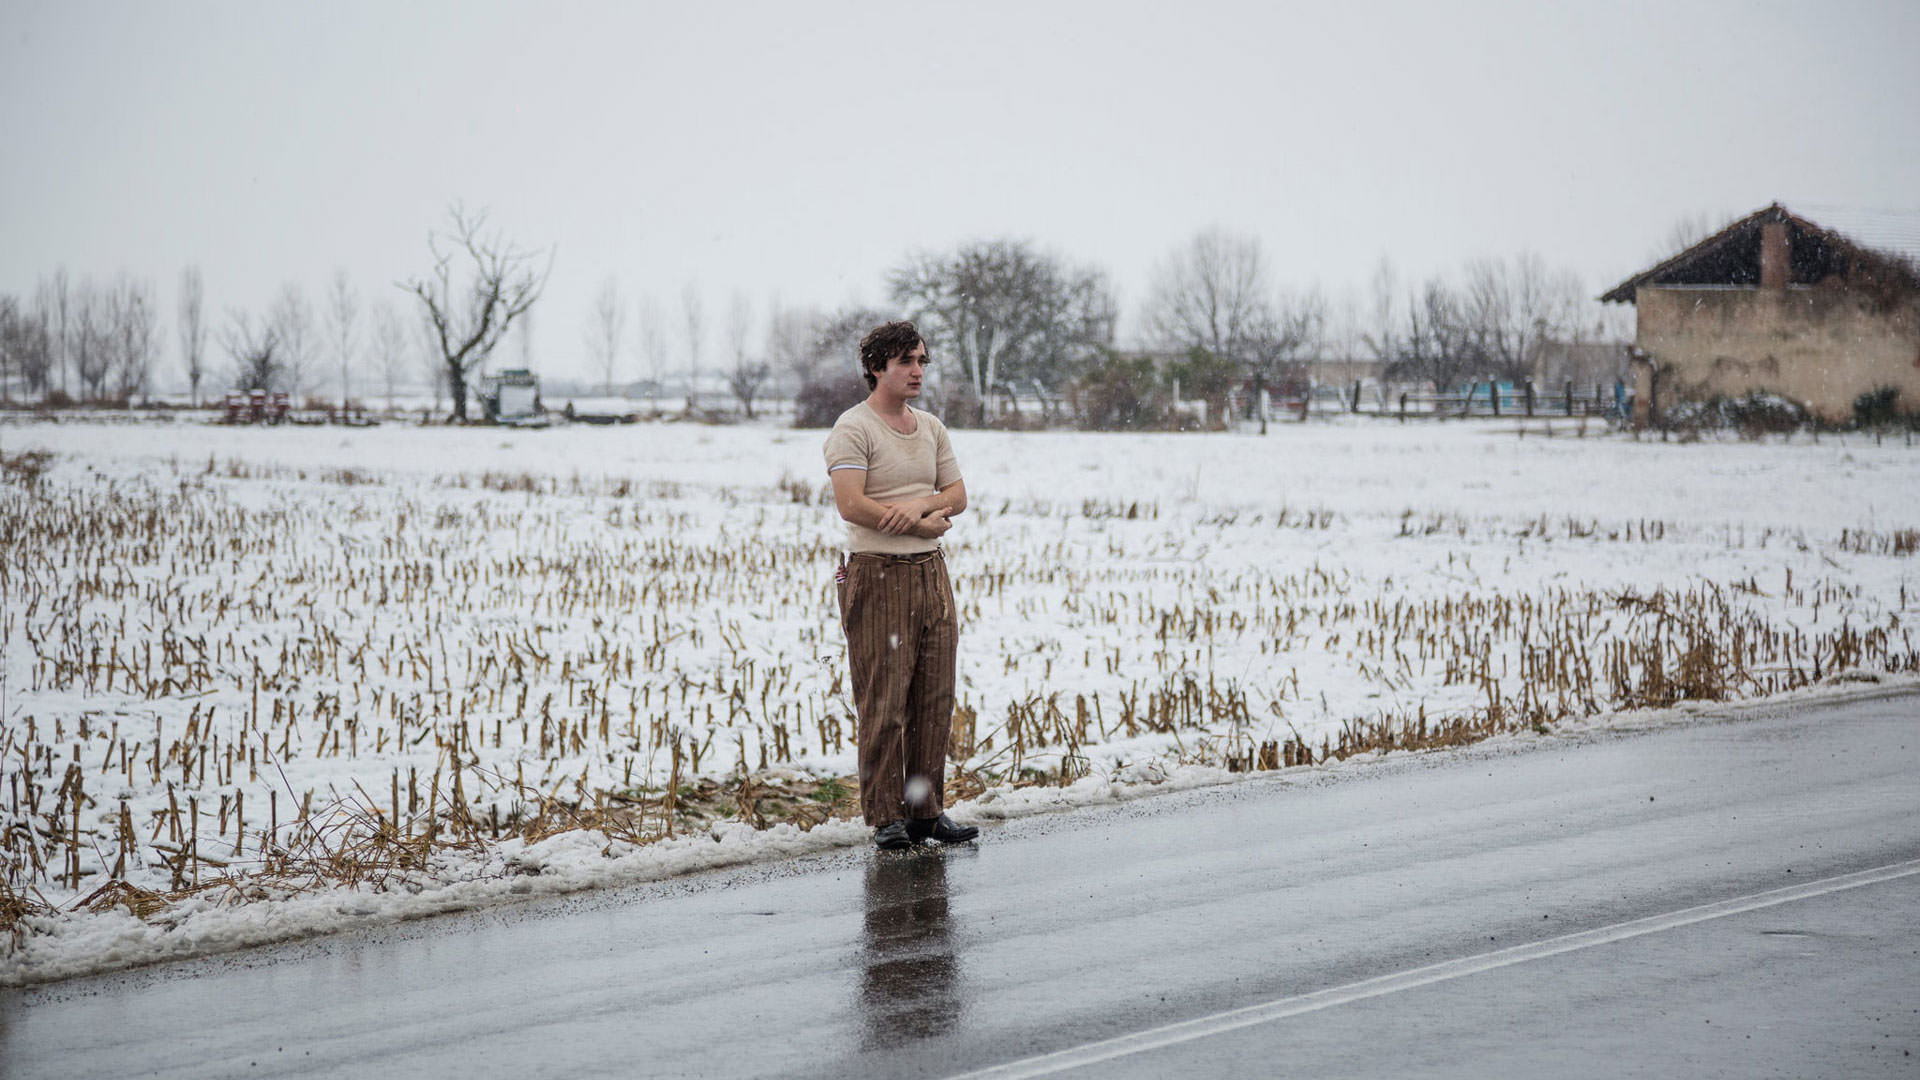 آدریانو تاردیولو در کنار جاده با برف روی زمین پشت سر او در صحنه ای از فیلم شاد مانند لازاروس ساخته آلیس رورواکر ایستاده است.